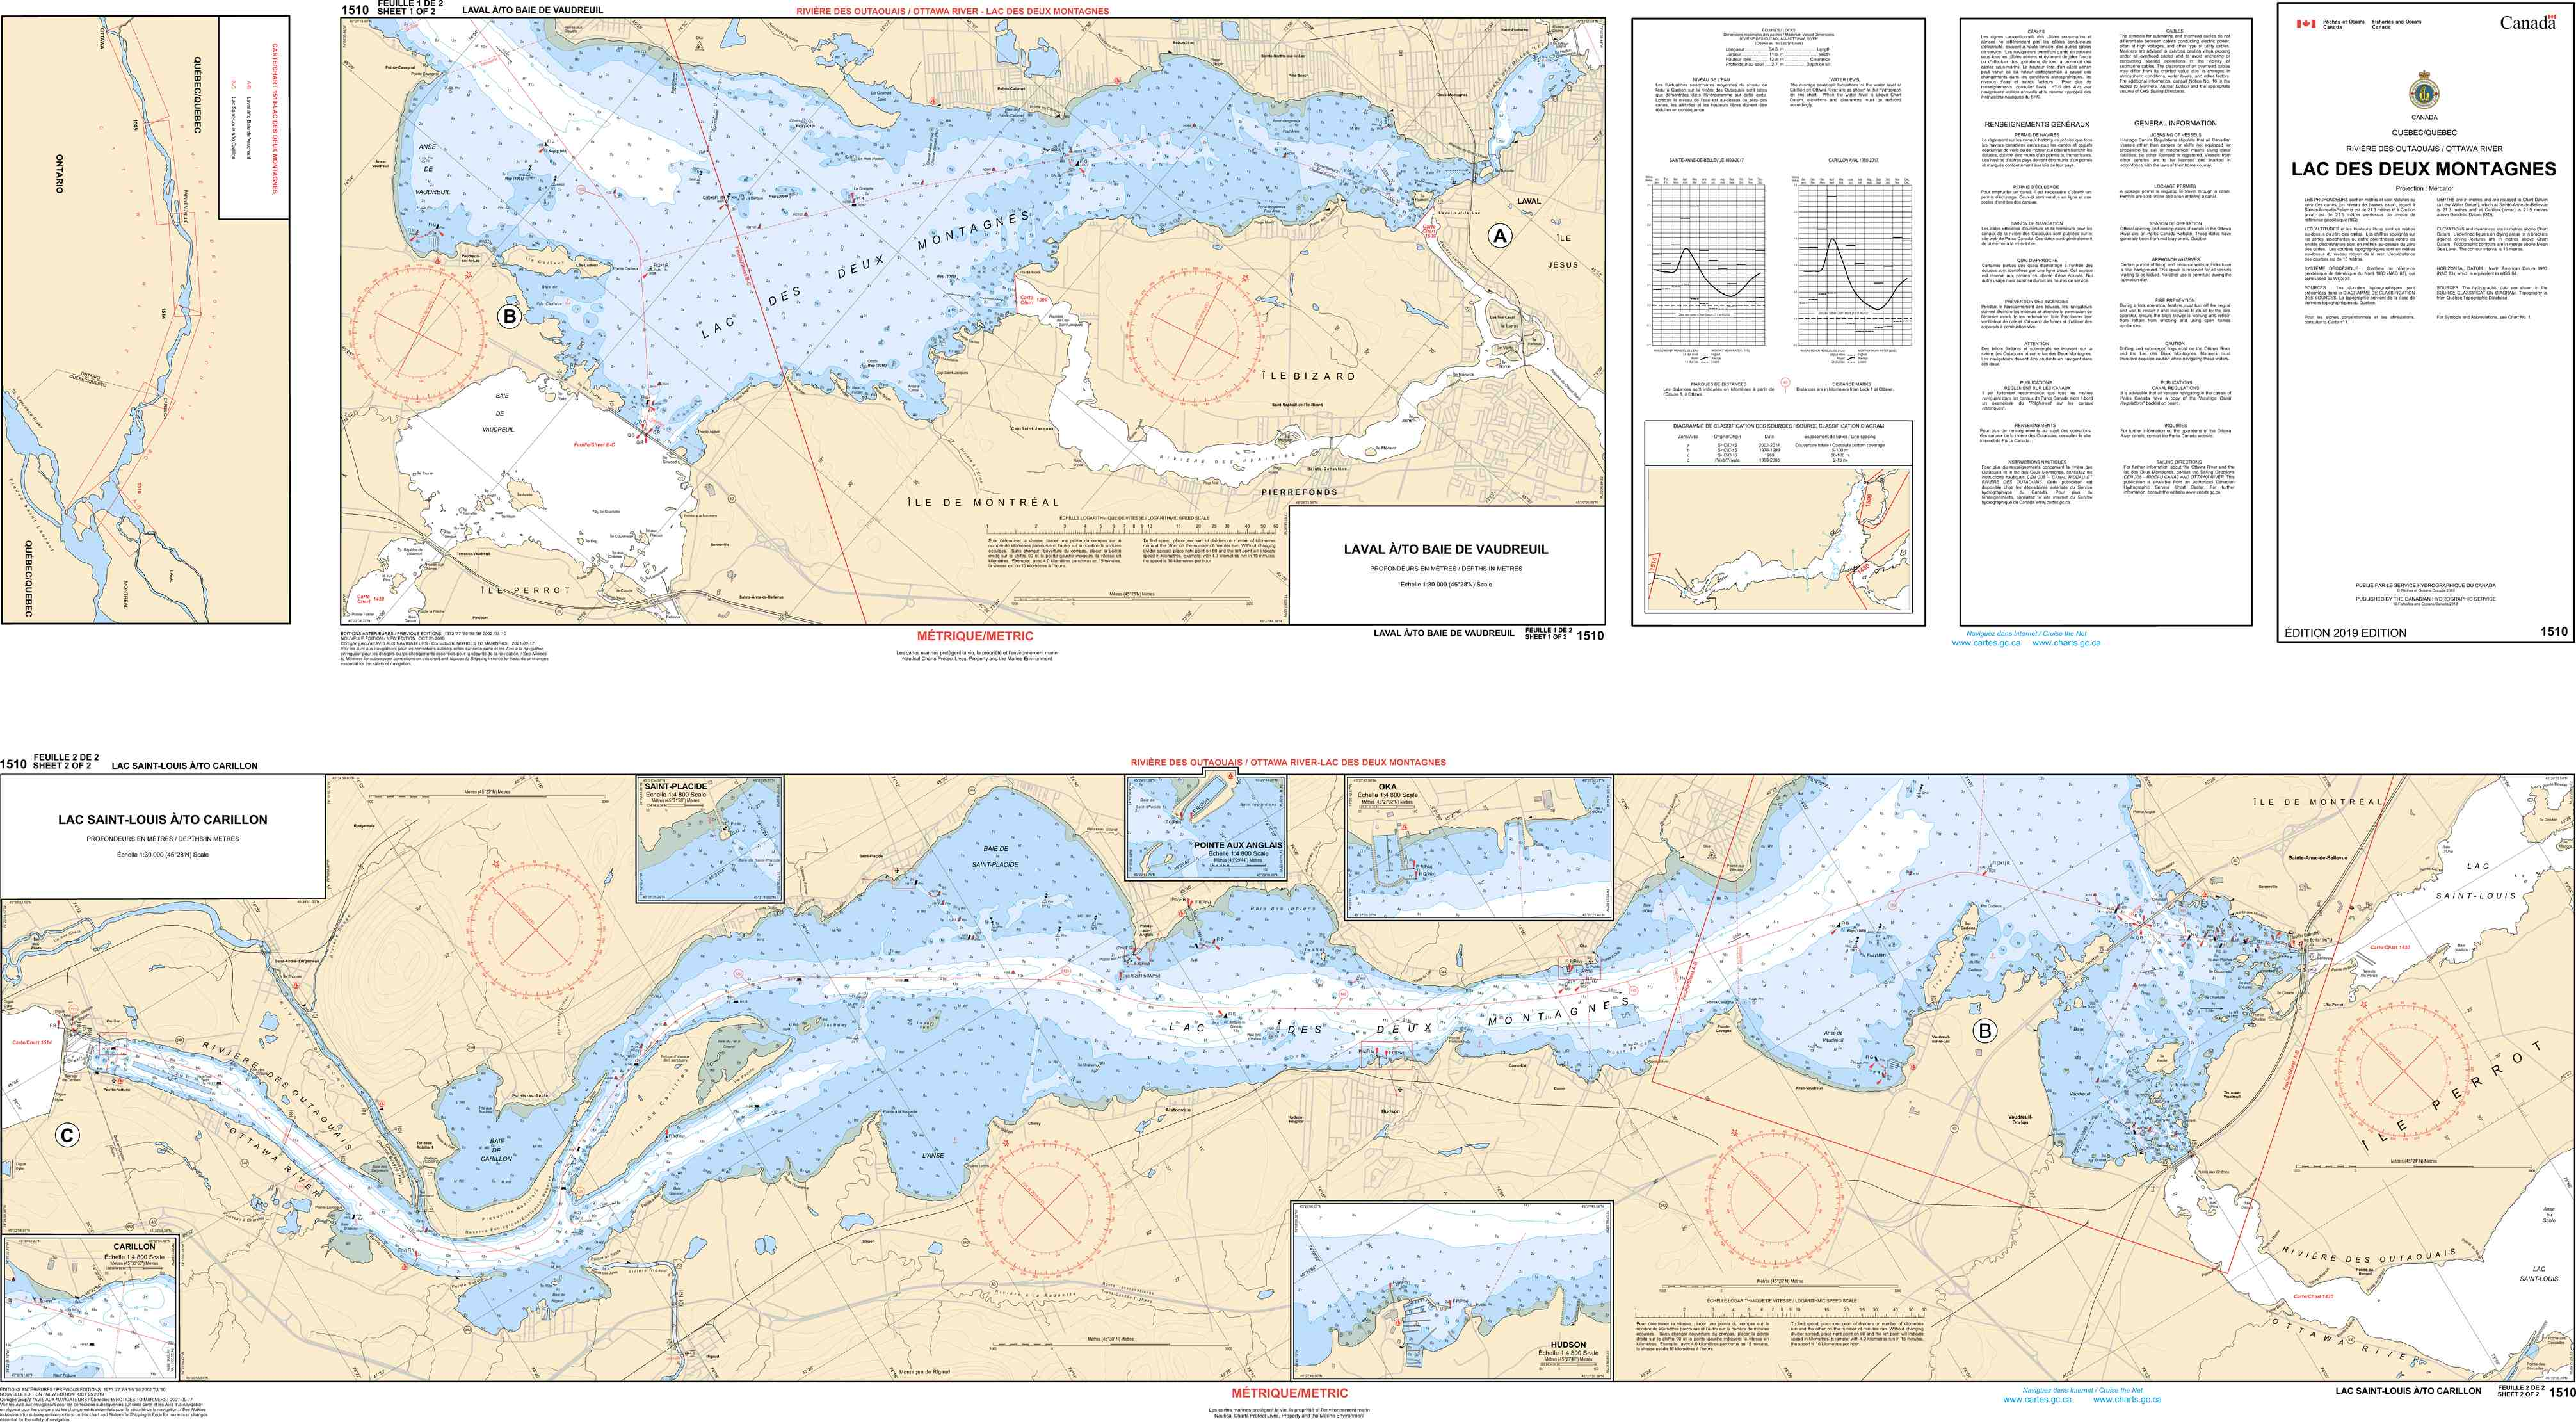 Canadian Hydrographic Service Nautical Chart CHS1510: Lac des Deux Montagnes